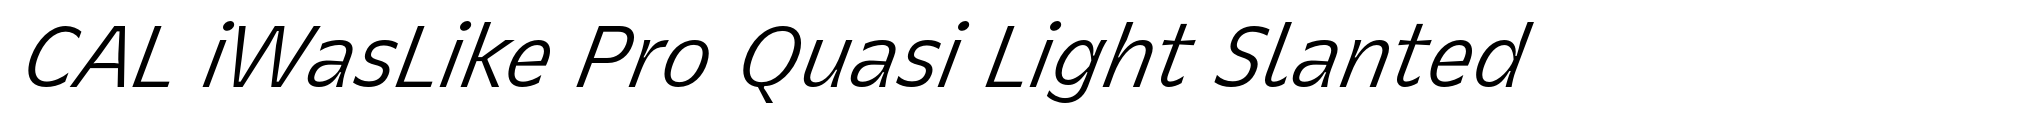 CAL iWasLike Pro Quasi Light Slanted image